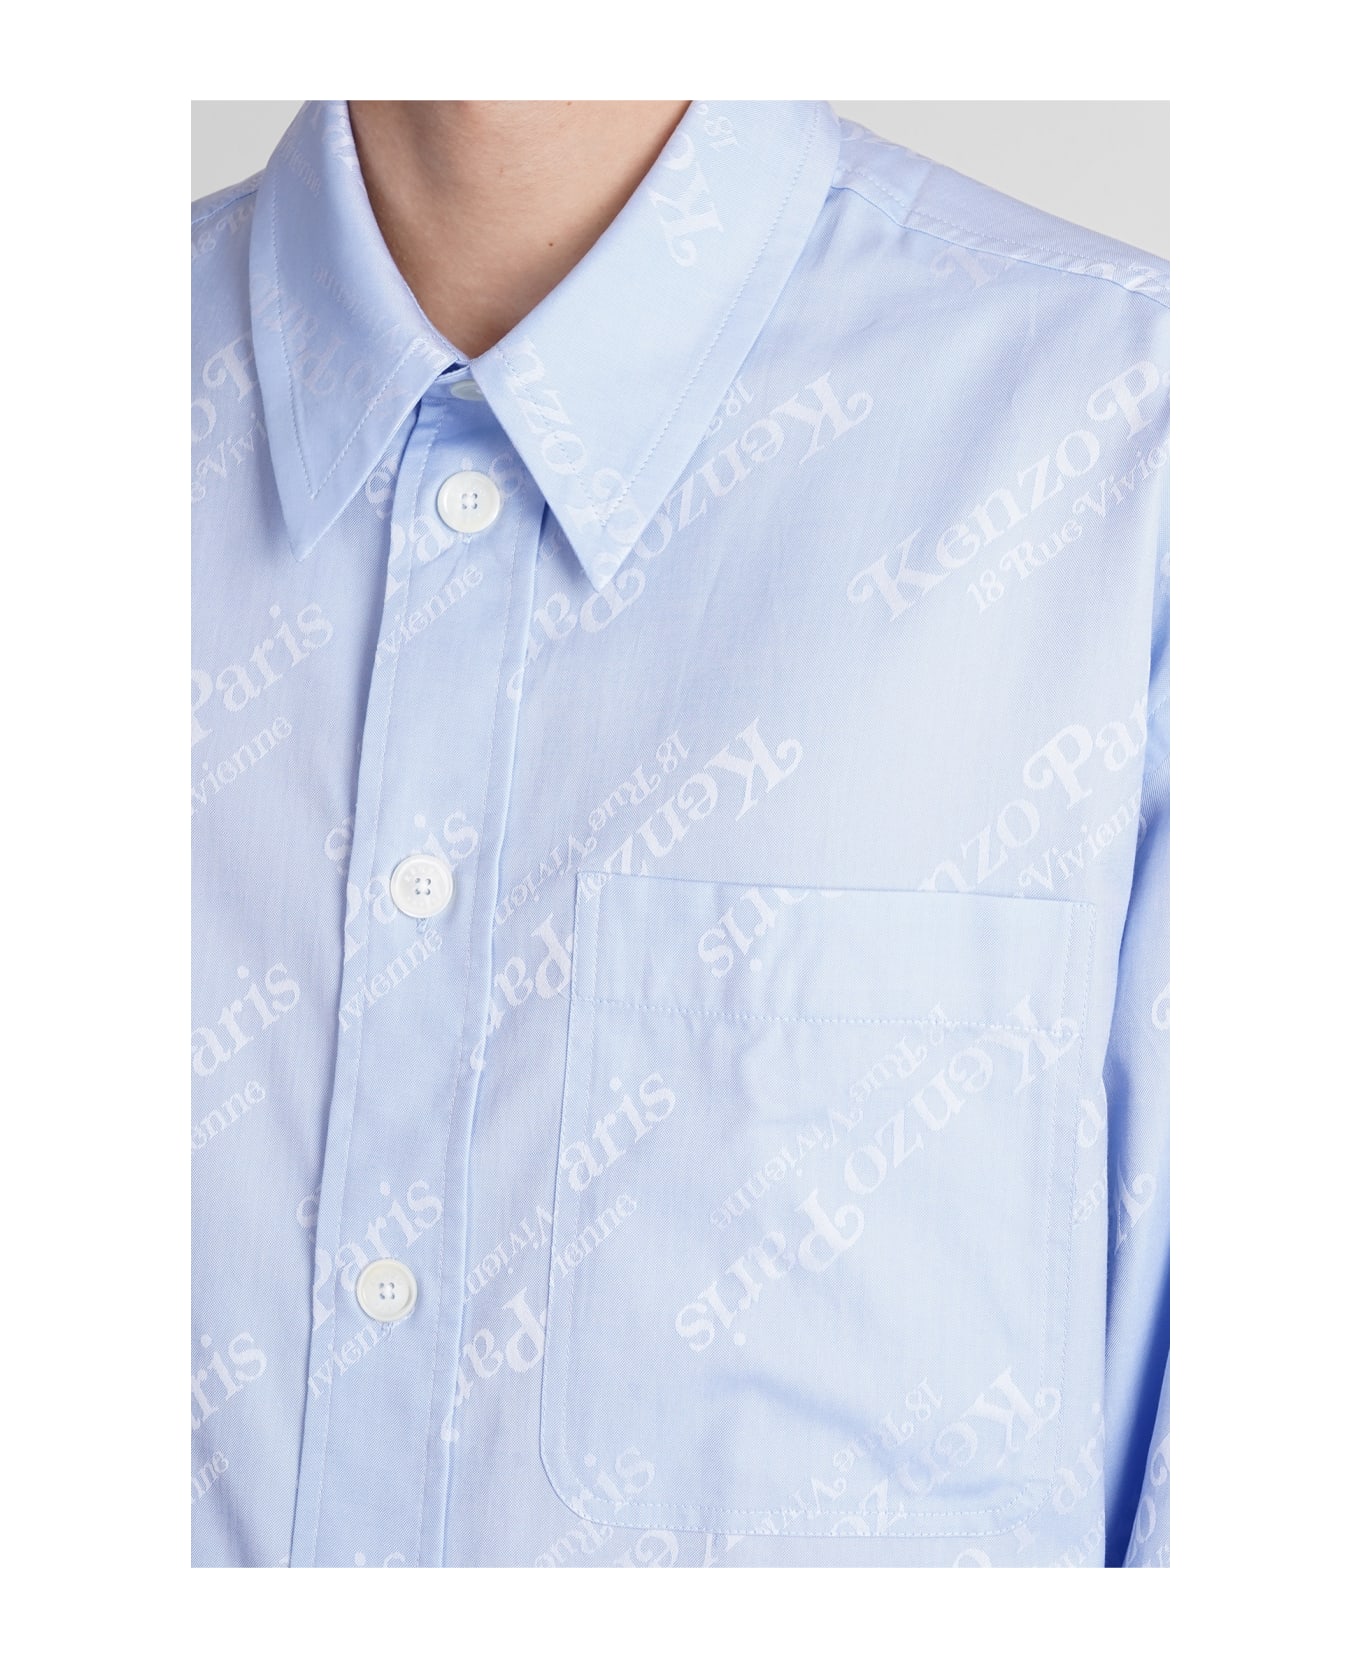 Kenzo Shirt In Cyan Cotton - cyan